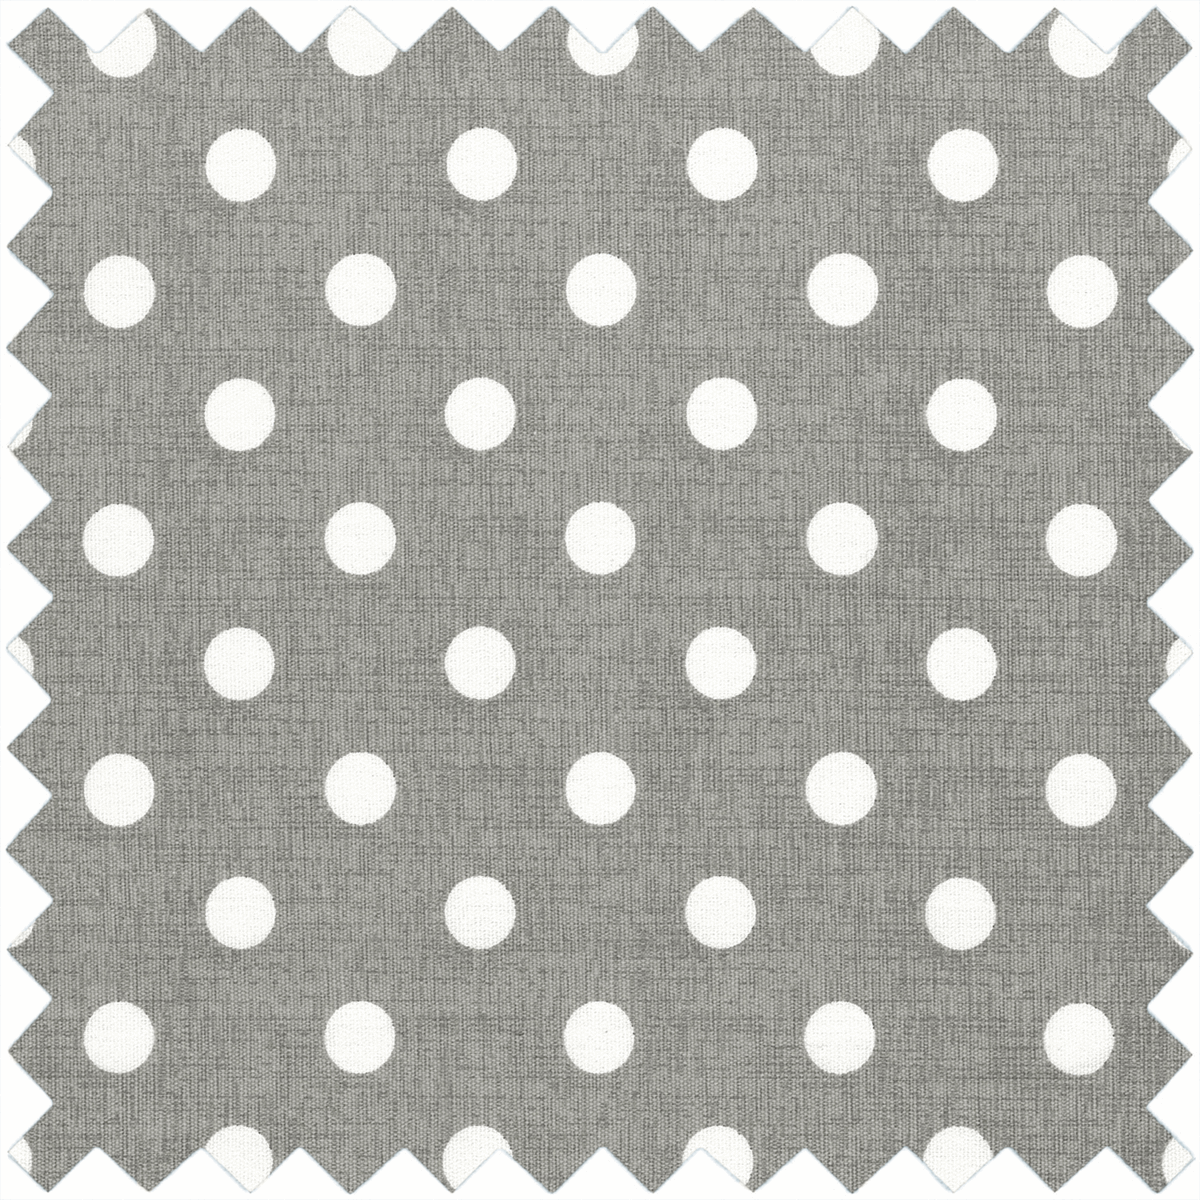 Sewing Box Square Grey Linen Polka Dot Small